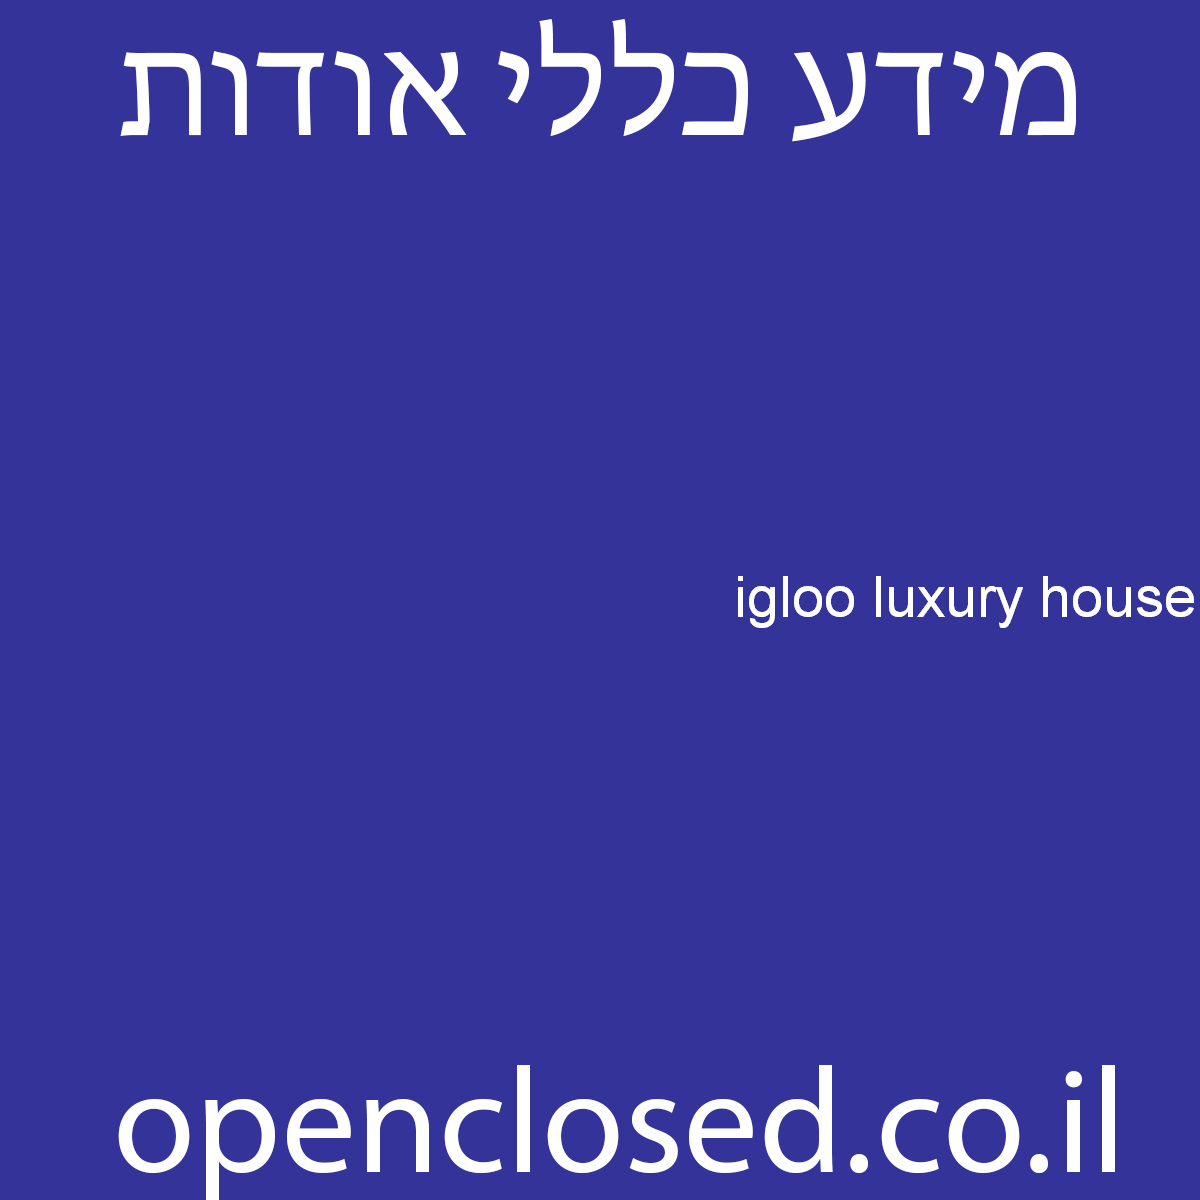 igloo luxury house